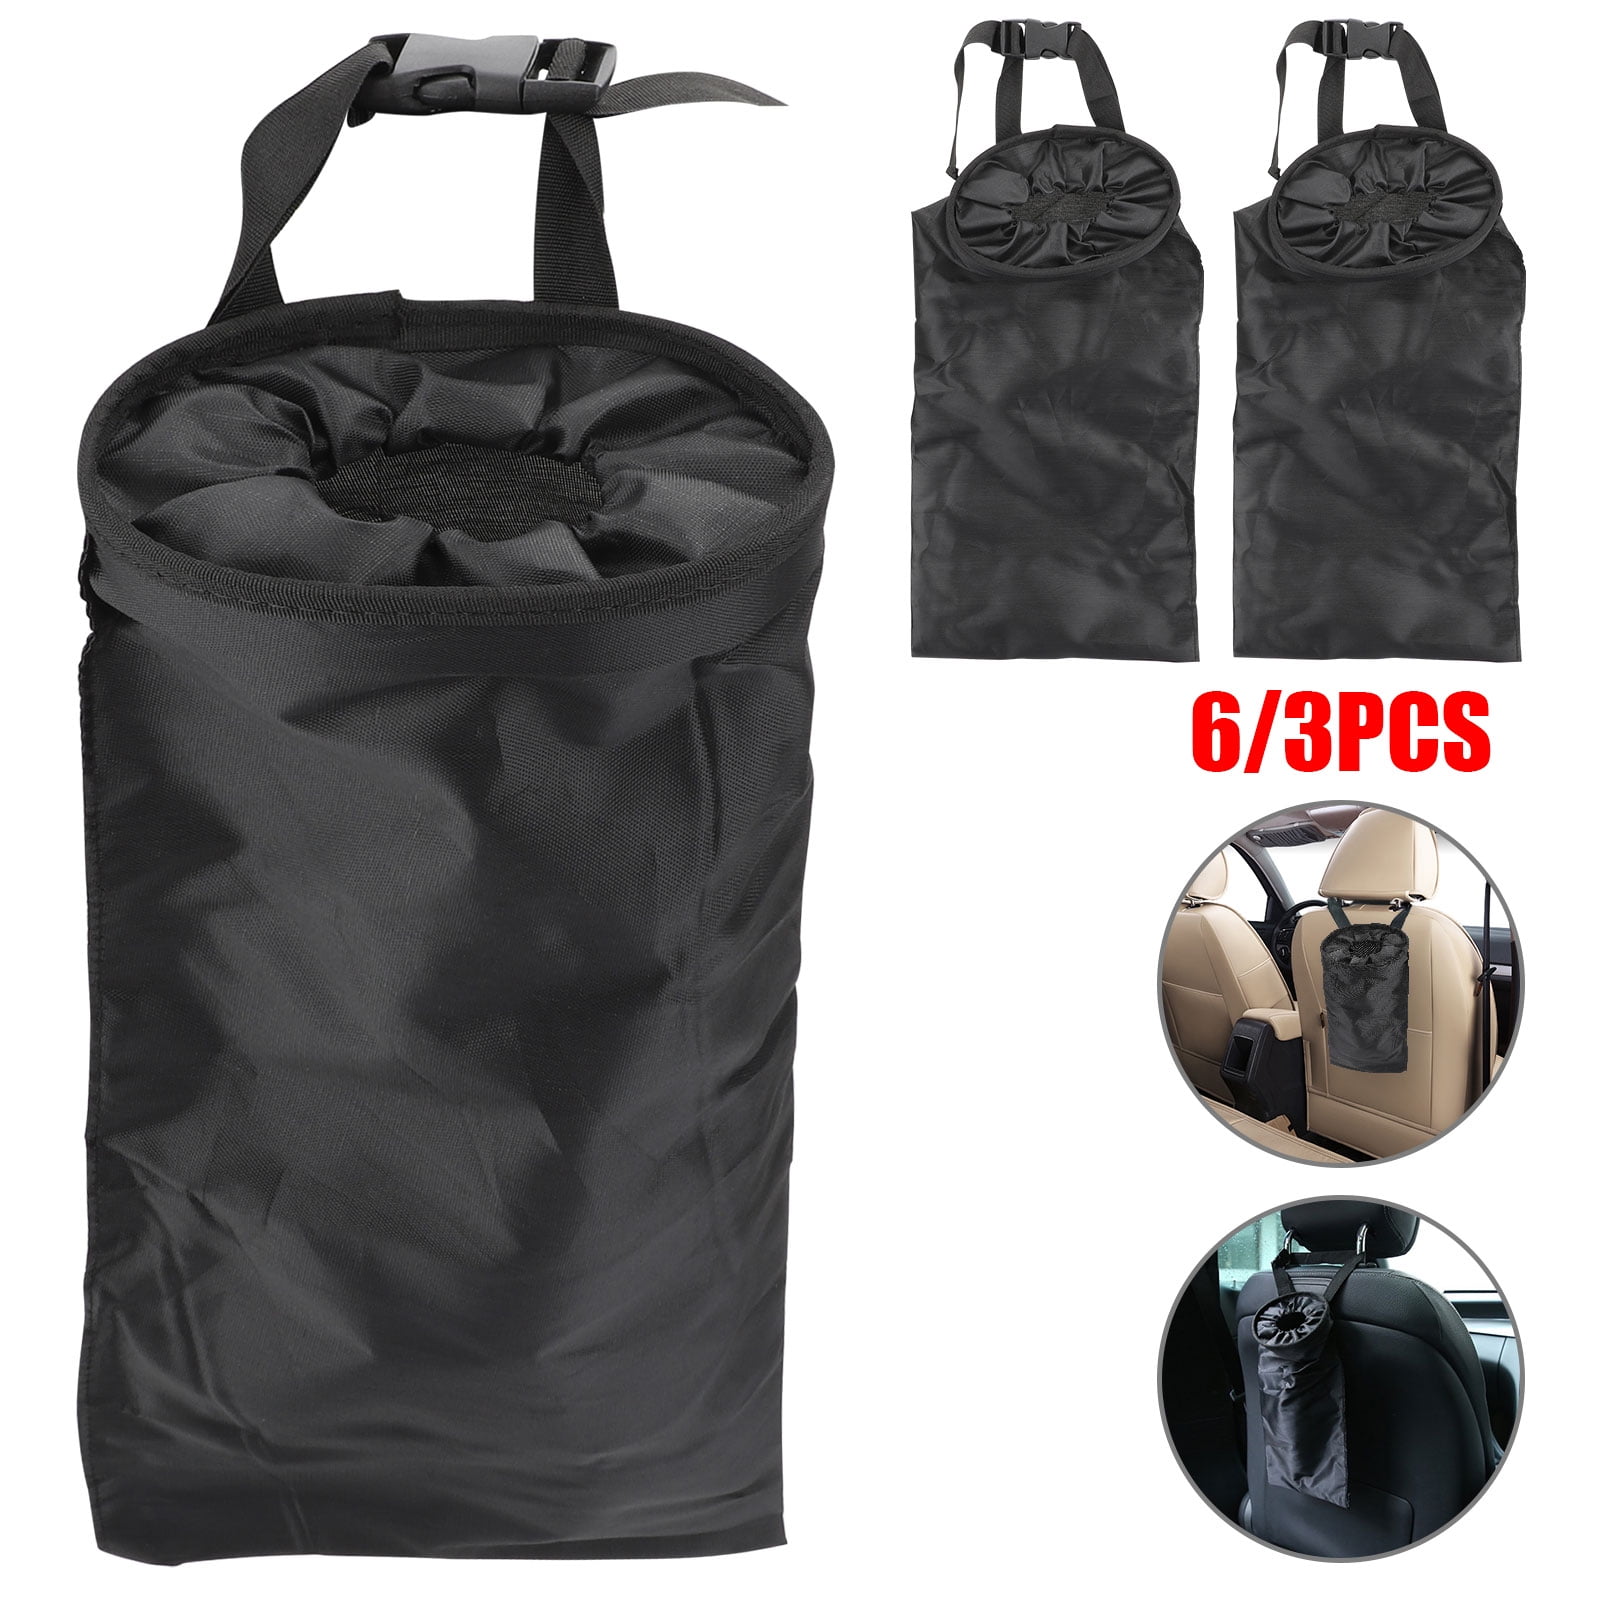 1Pcs Car Garbage Bin Car Garbage Can Holder Car Backseat Trash Garbage Storage Bag Vehicle Headrest Hanging Trash Waste Litter Can Black 